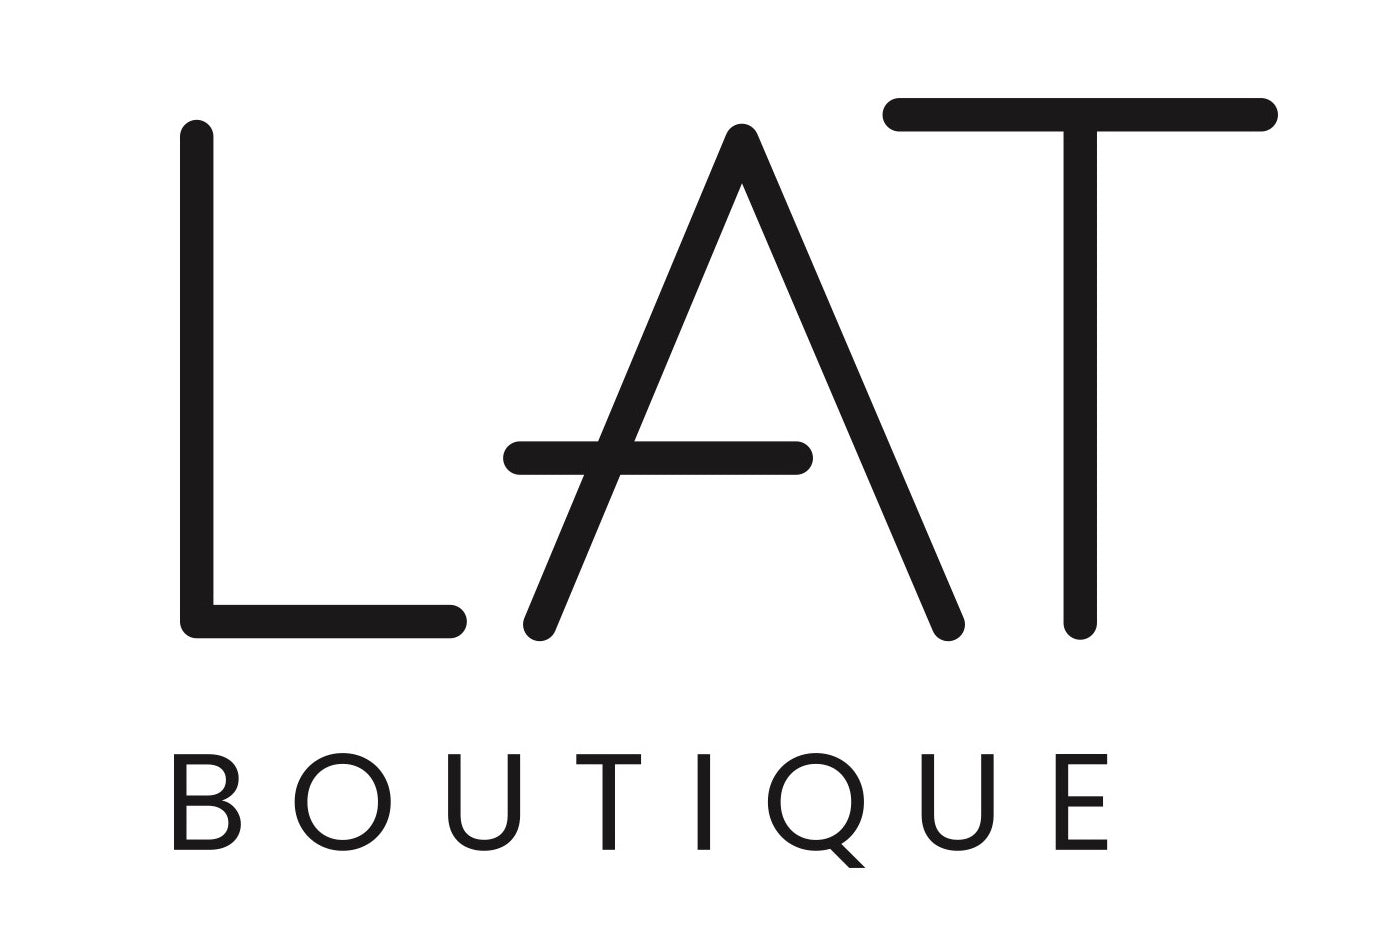 LAT Logo